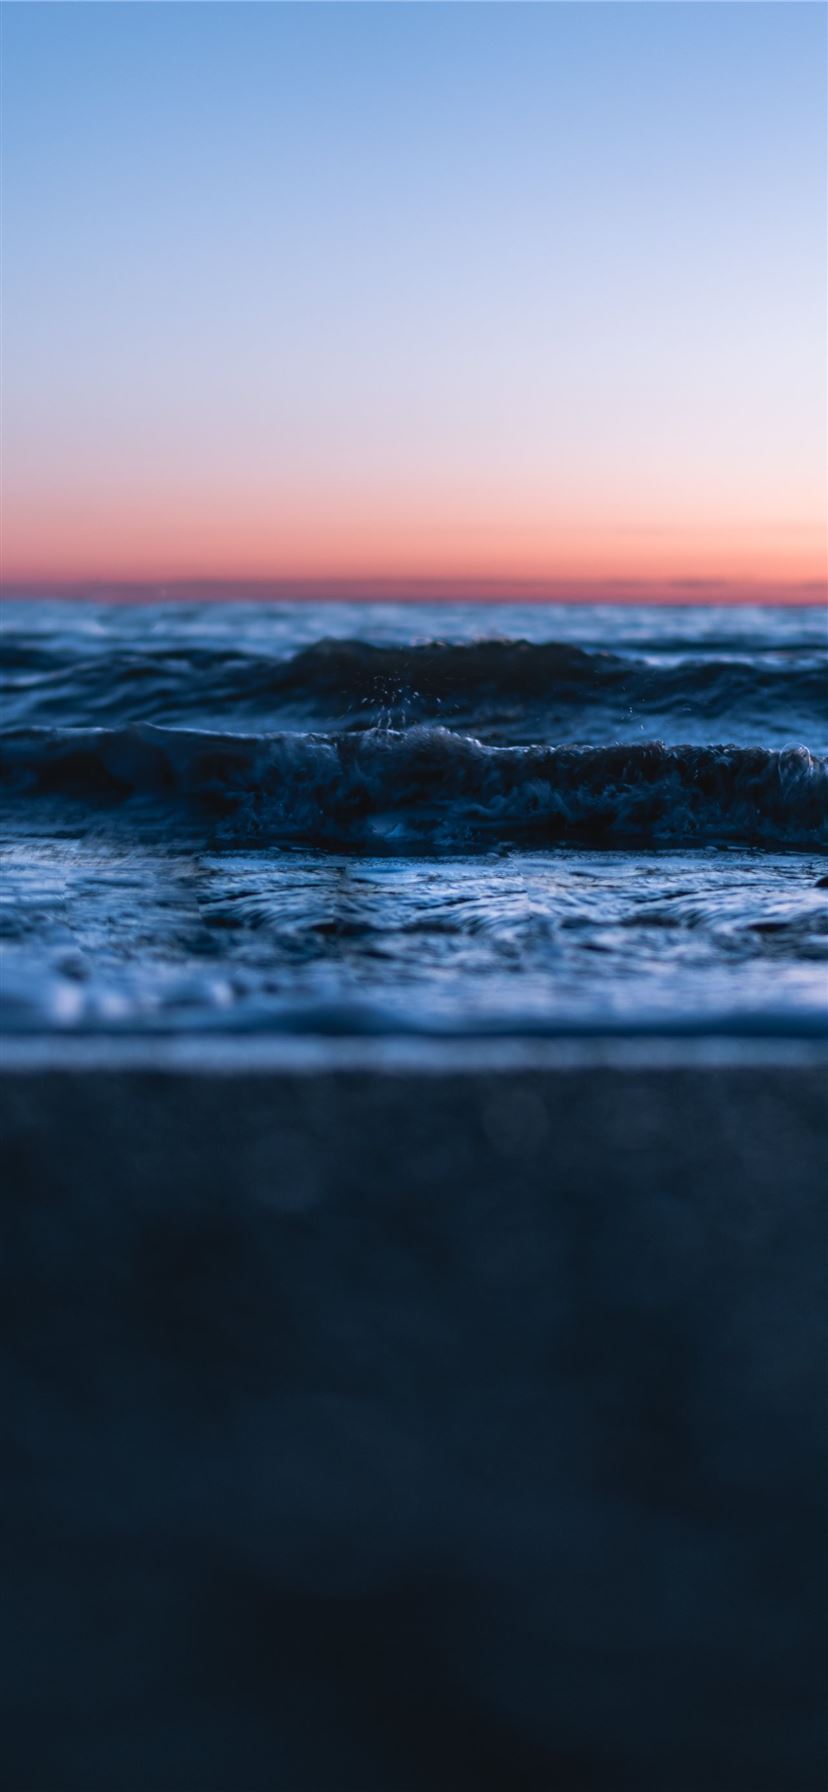 ocean waves crashing on shore during sunset iPhone 11 wallpaper 